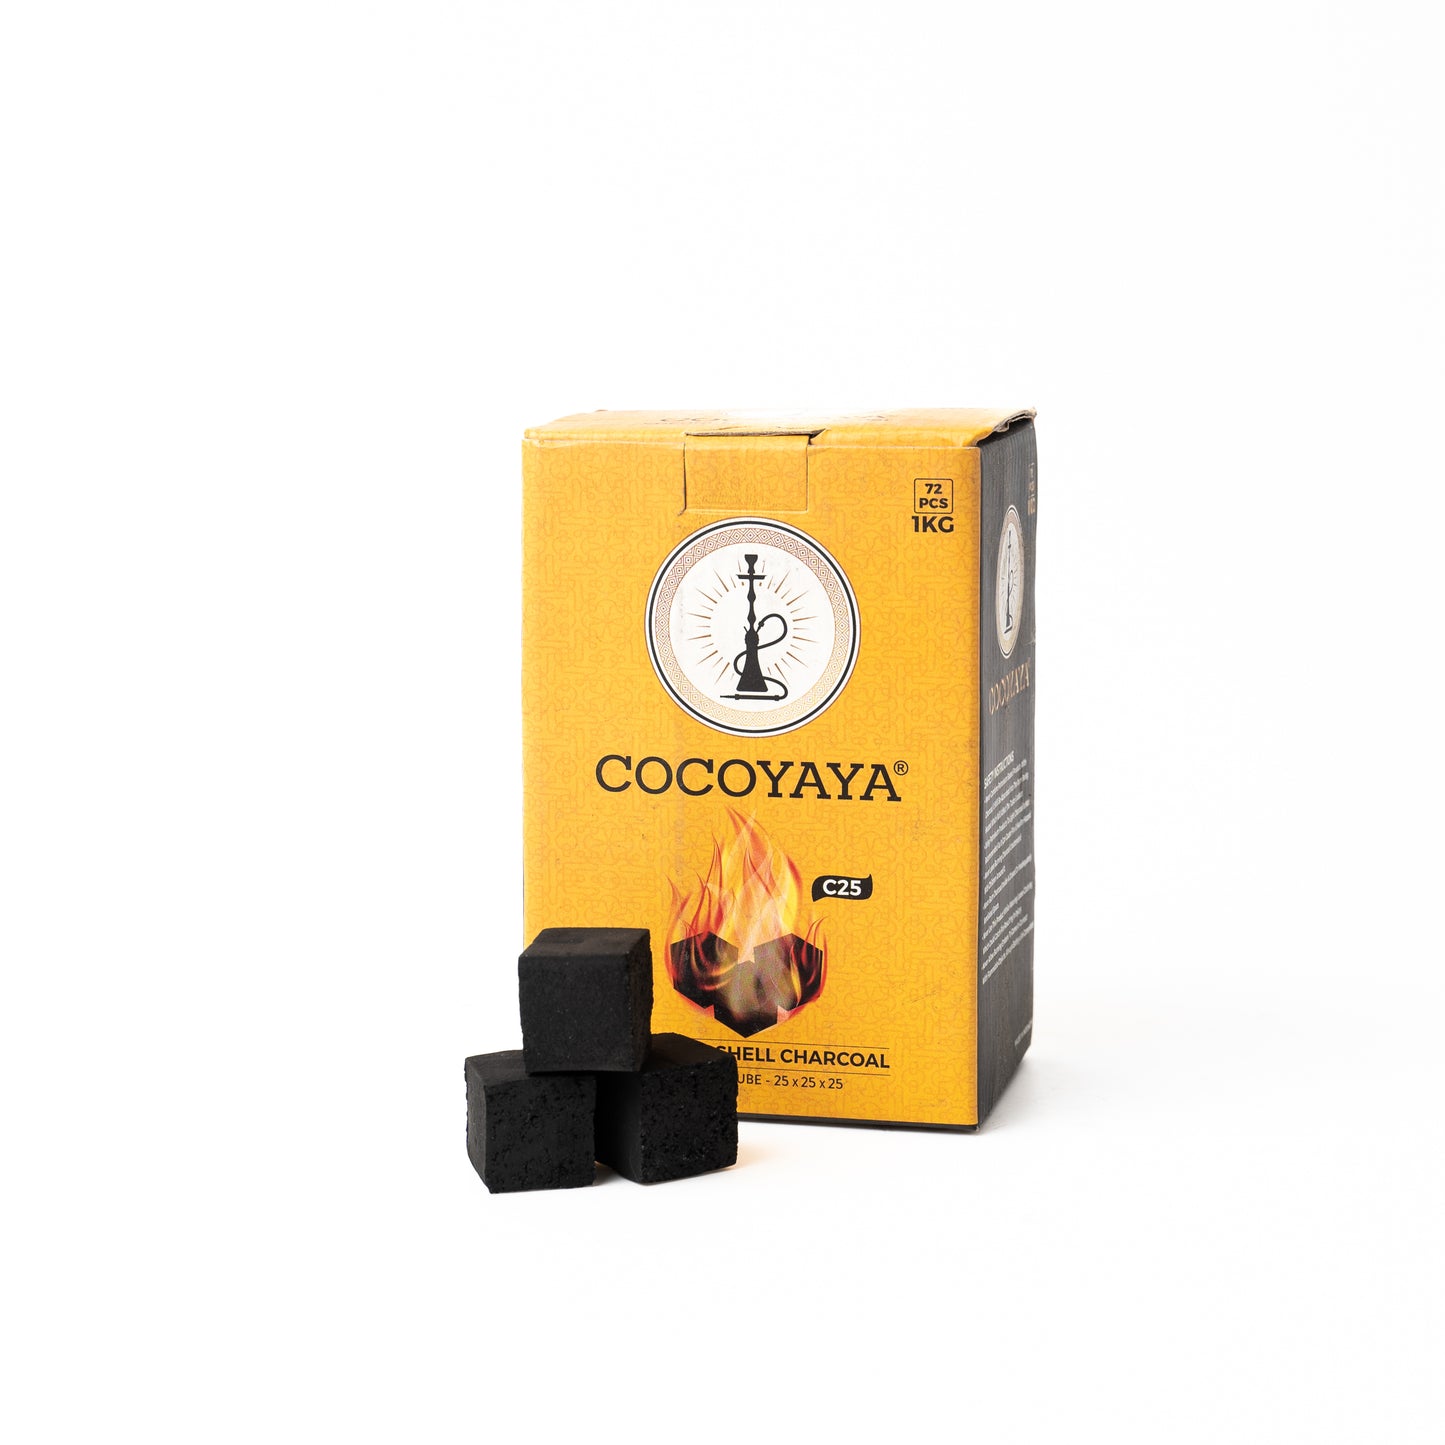 COCOYAYA Coconut Coal for Hookah (Pack of 2) - 1KG Box